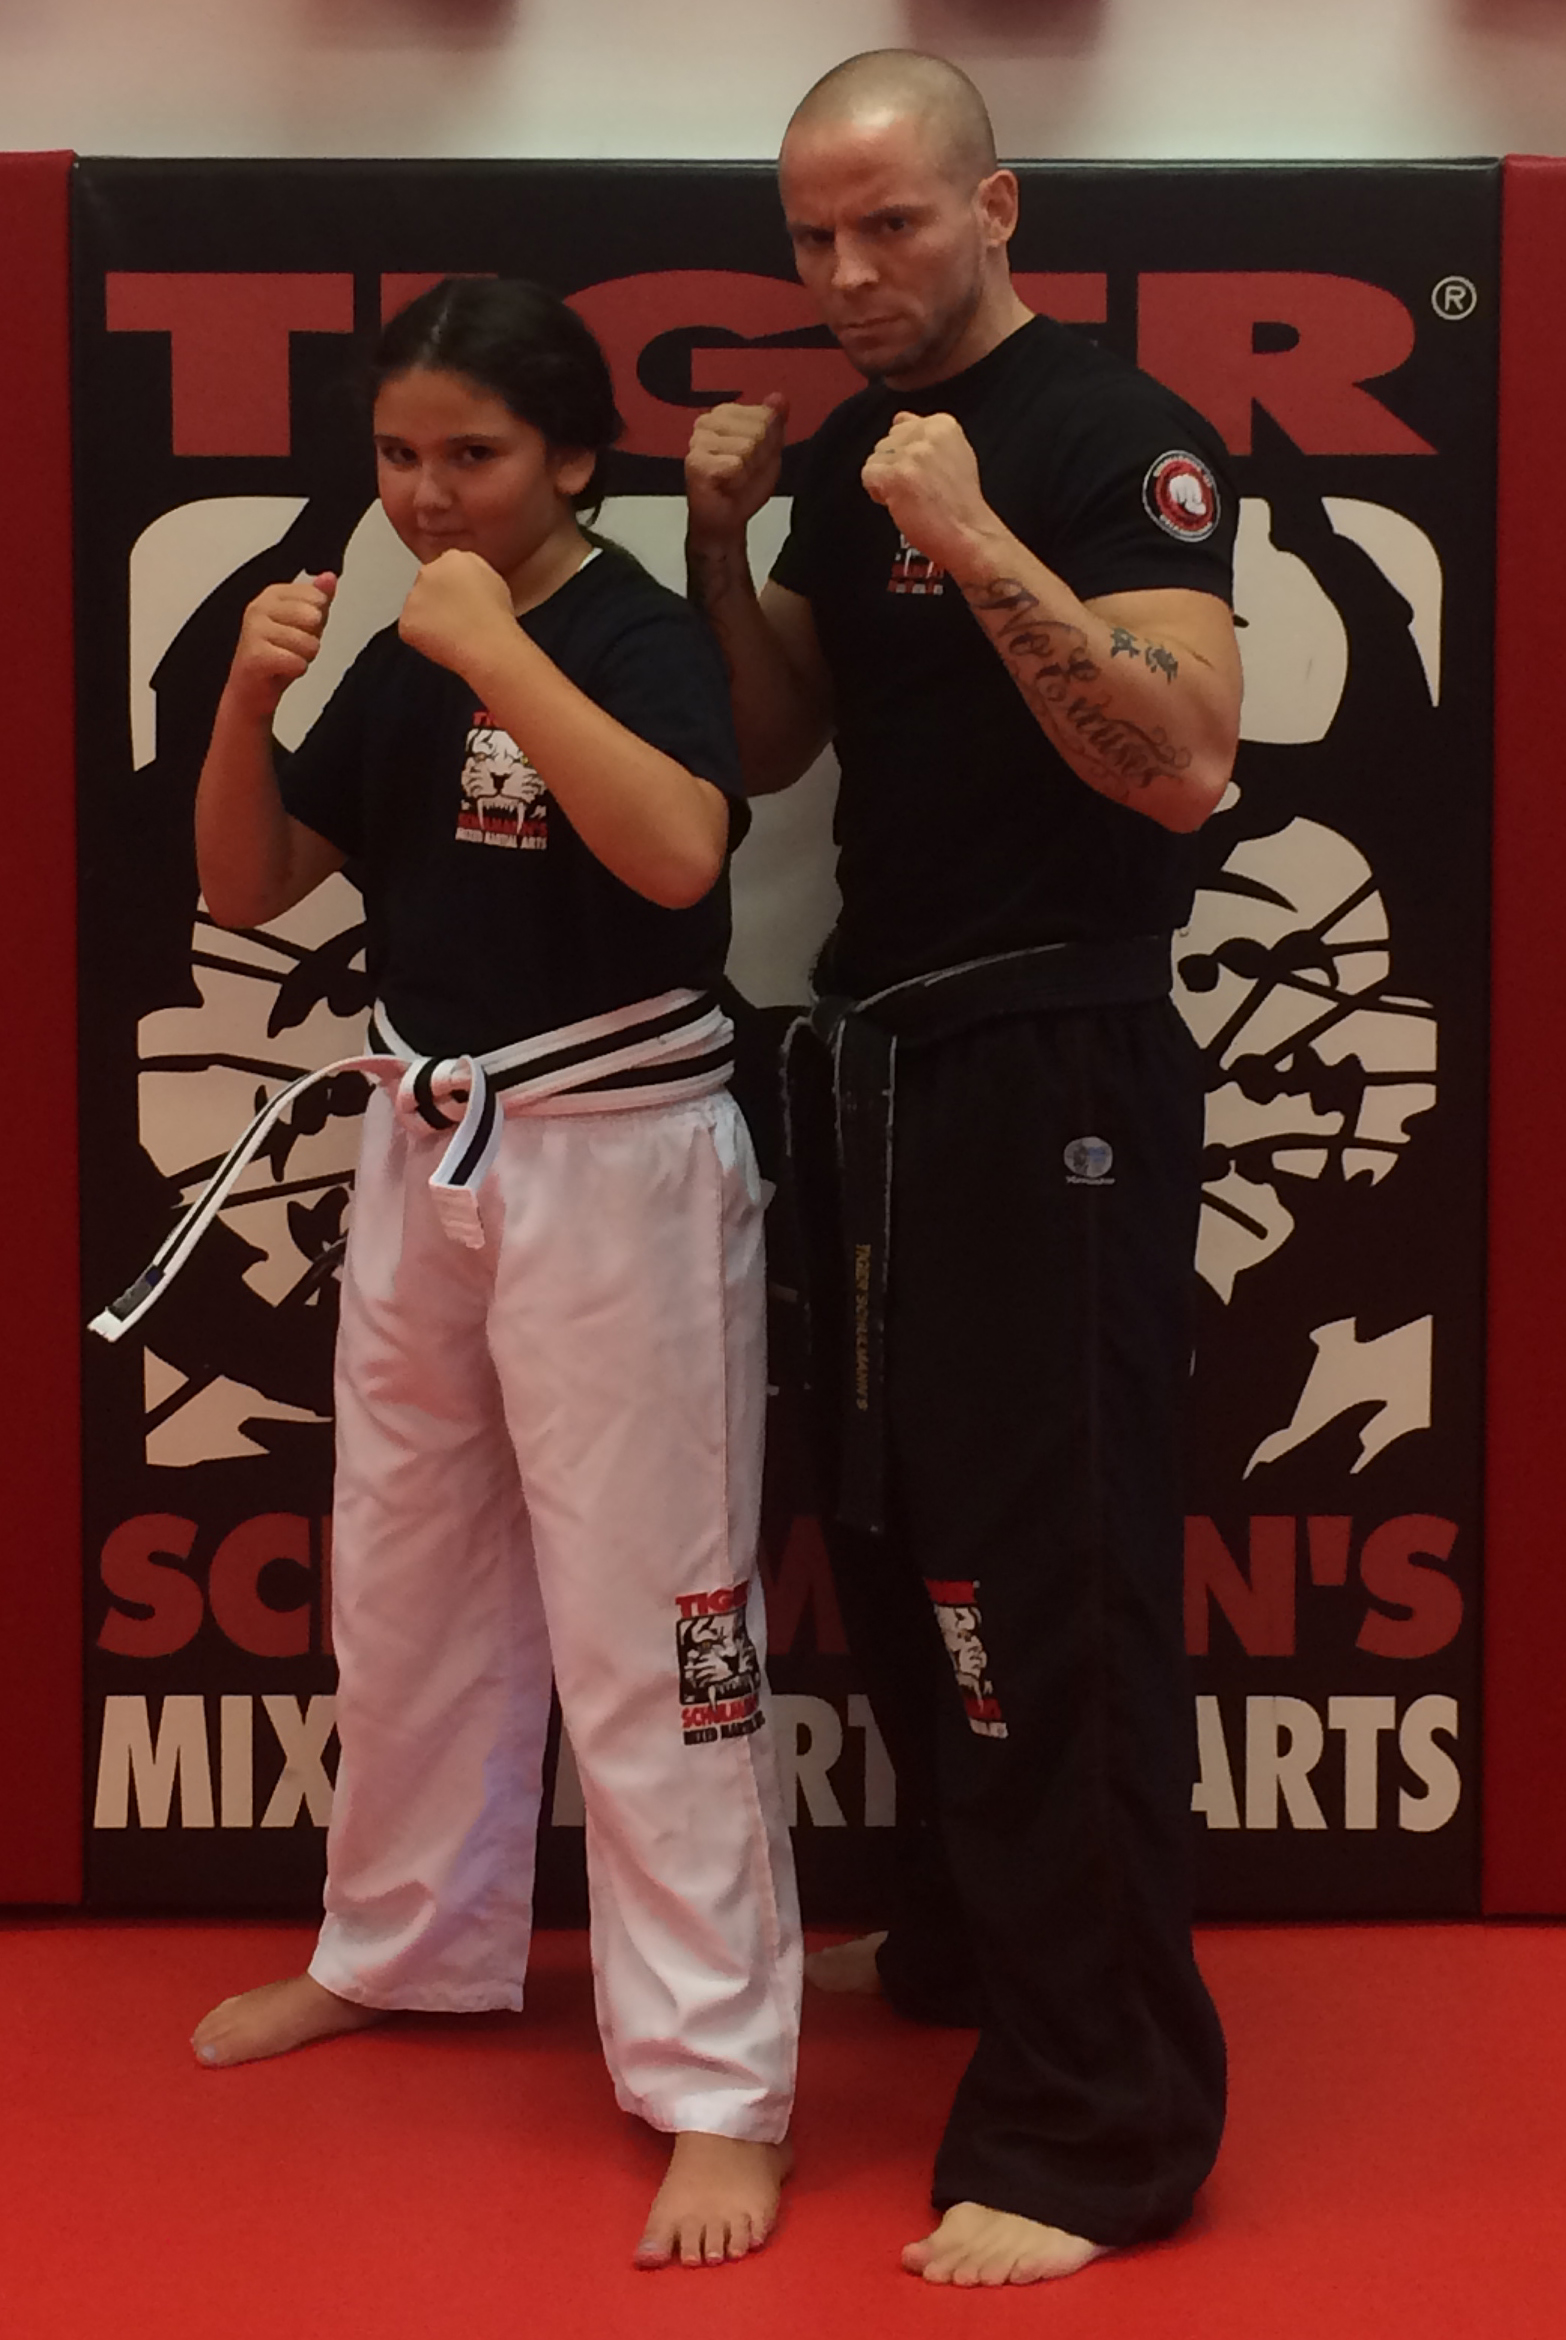 Discipline helps Samantha in karate